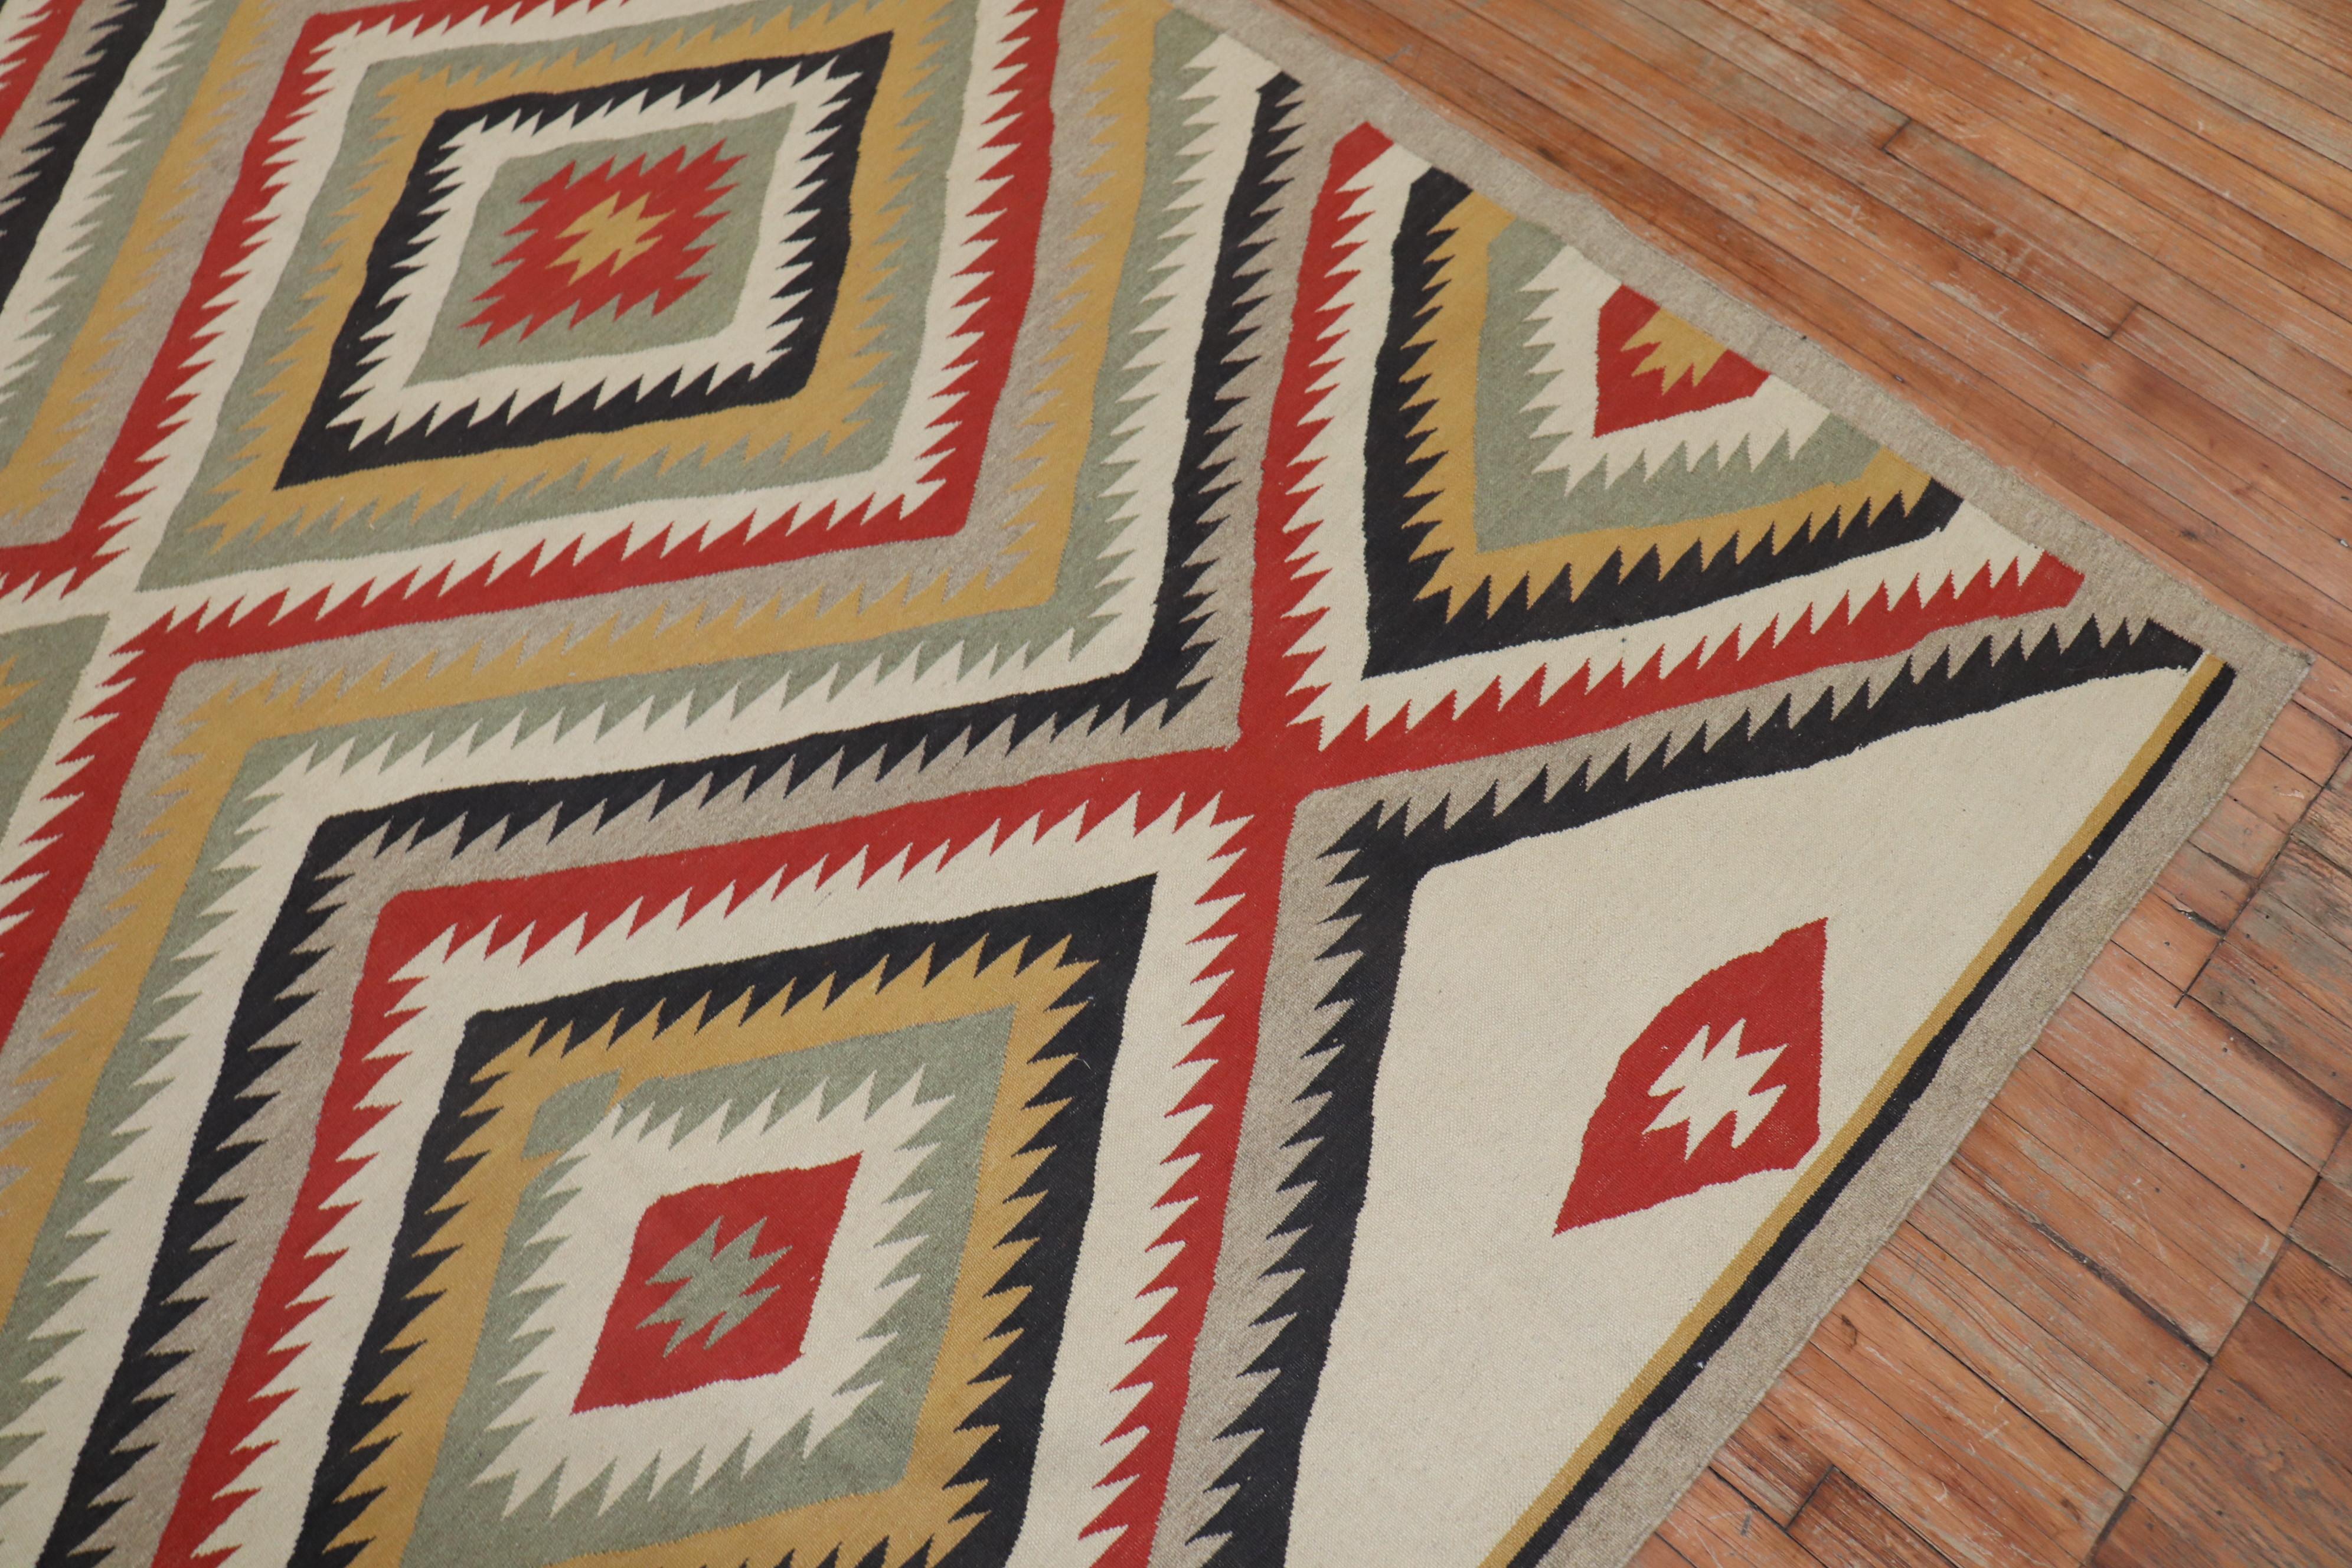 Une reproduction de tapis persan très décorative, unique en son genre, dérivée d'un tapis Navajo américain, avec un motif tribal géométrique à grande échelle. La technique de tissage à plat utilisée est similaire à celle du tissage Navajo américain.